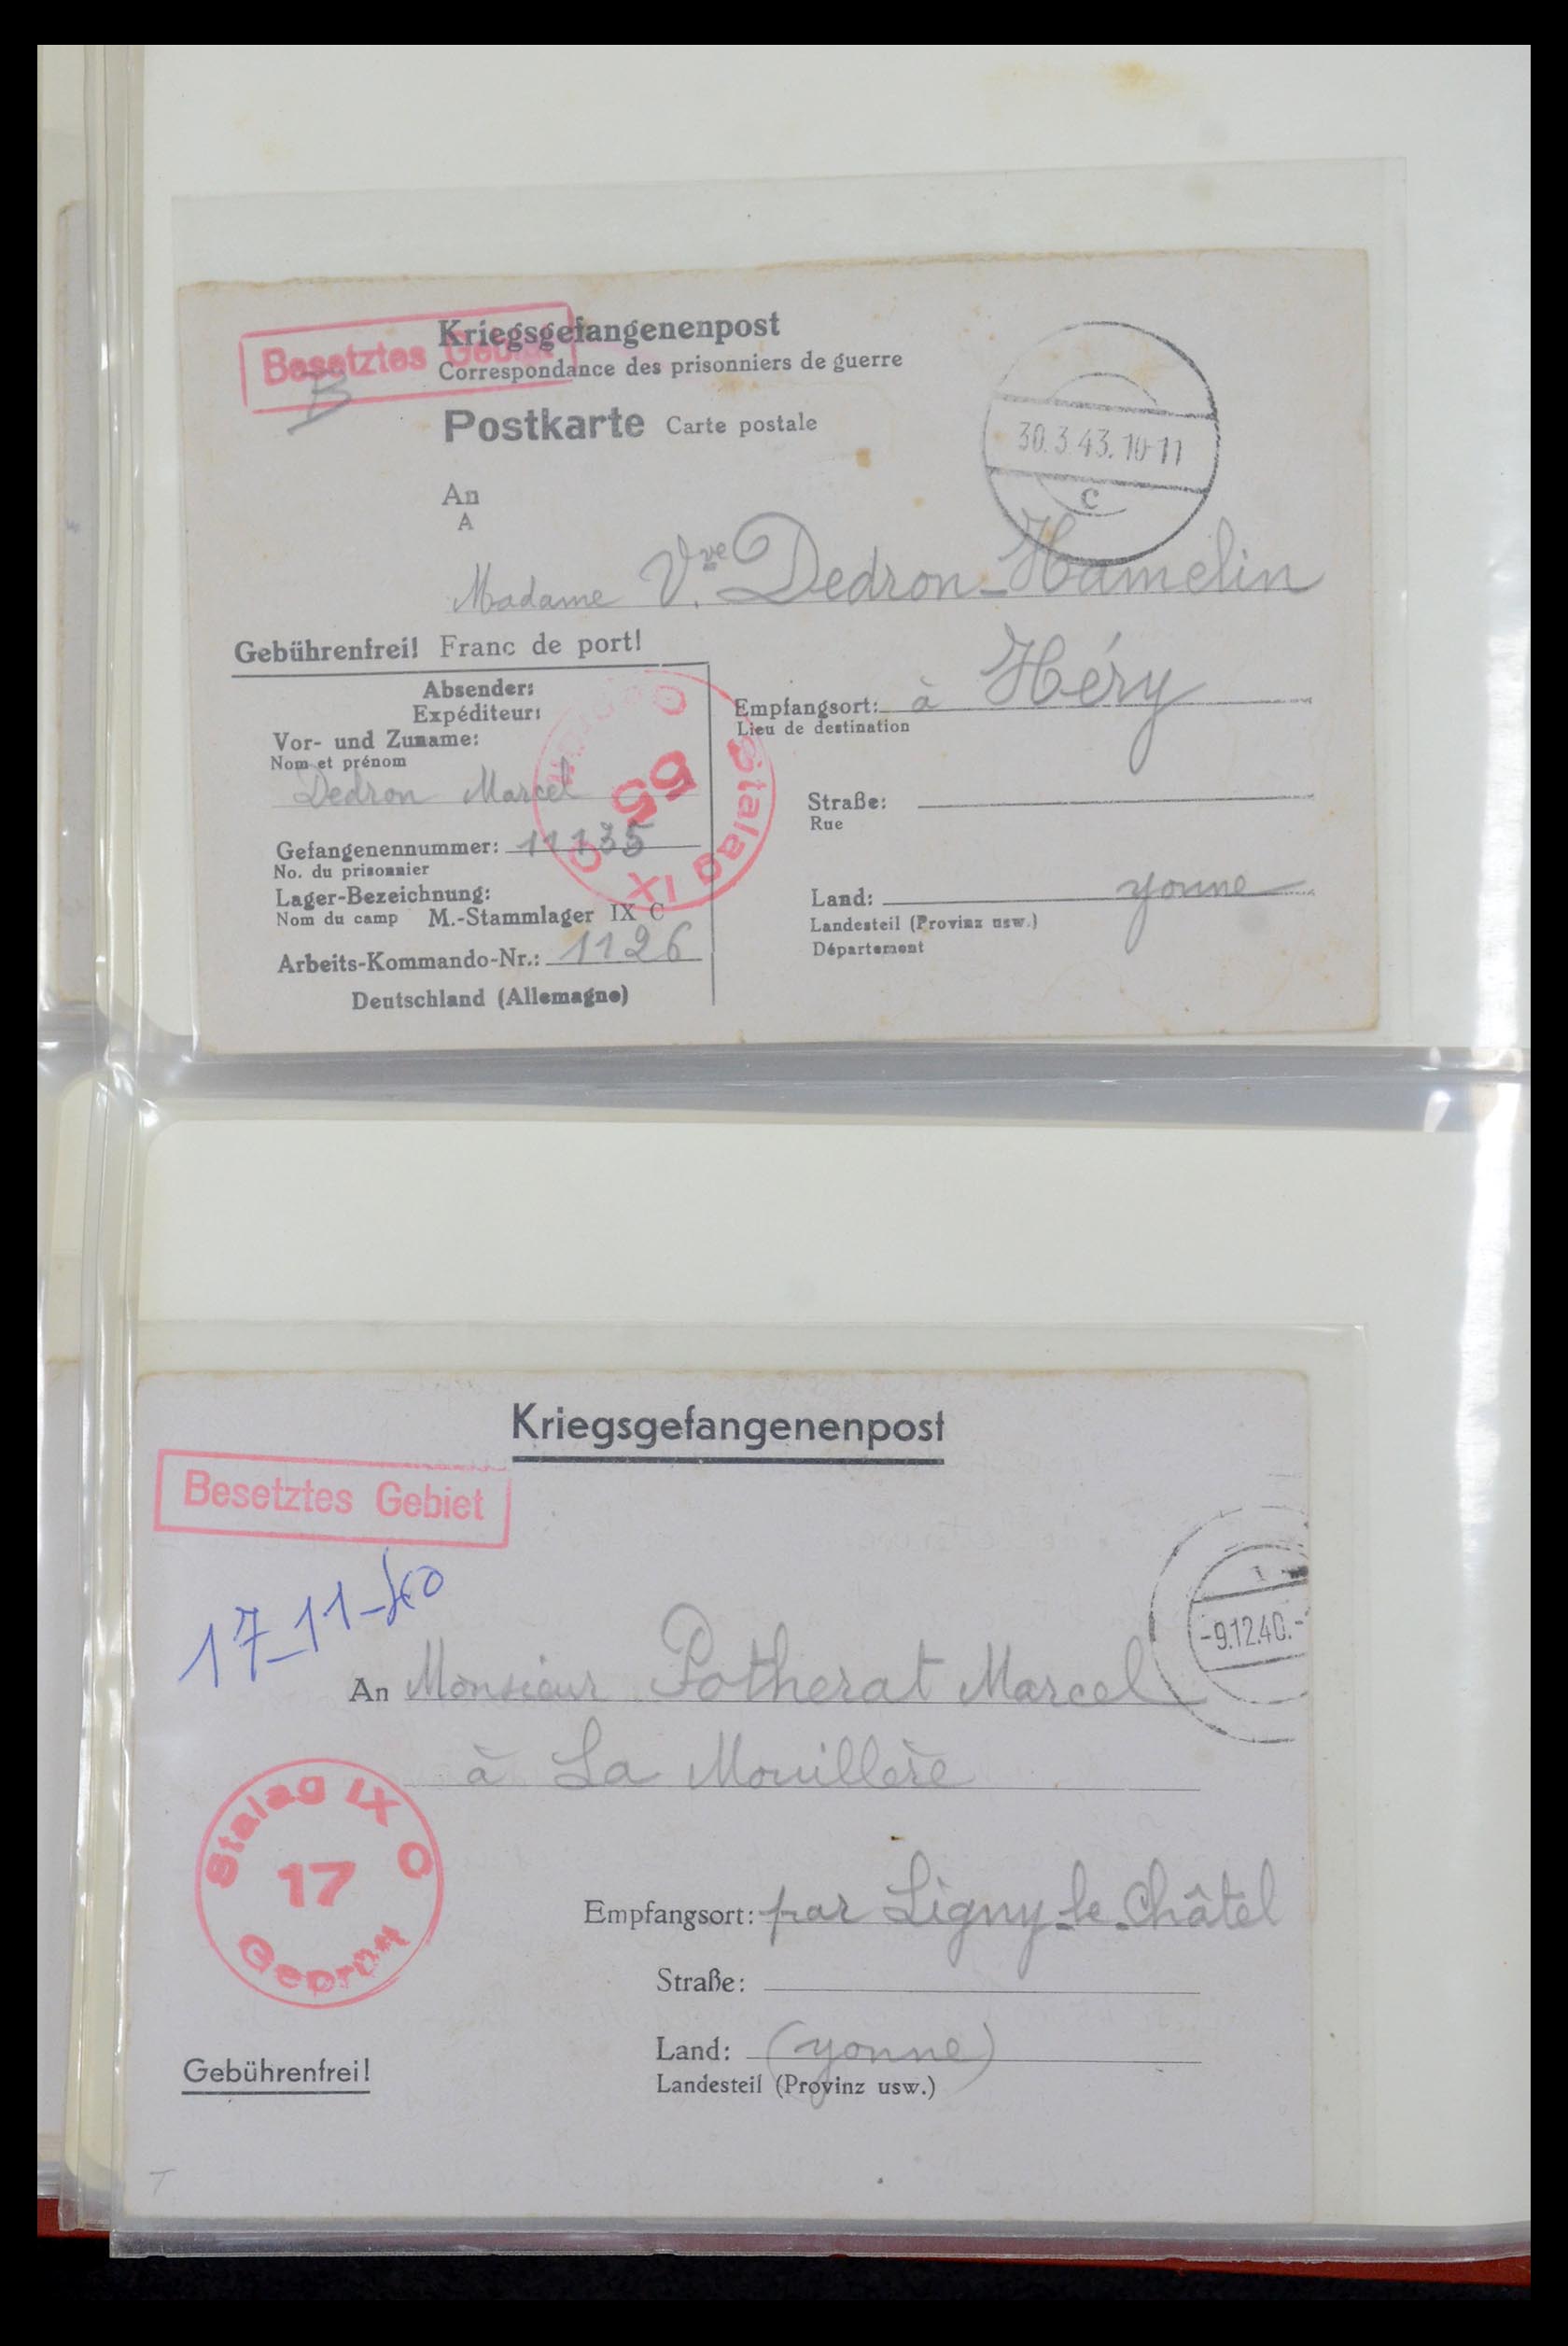 35599 024 - Stamp Collection 35599 Germany prisoner of war cards 1940-1944.